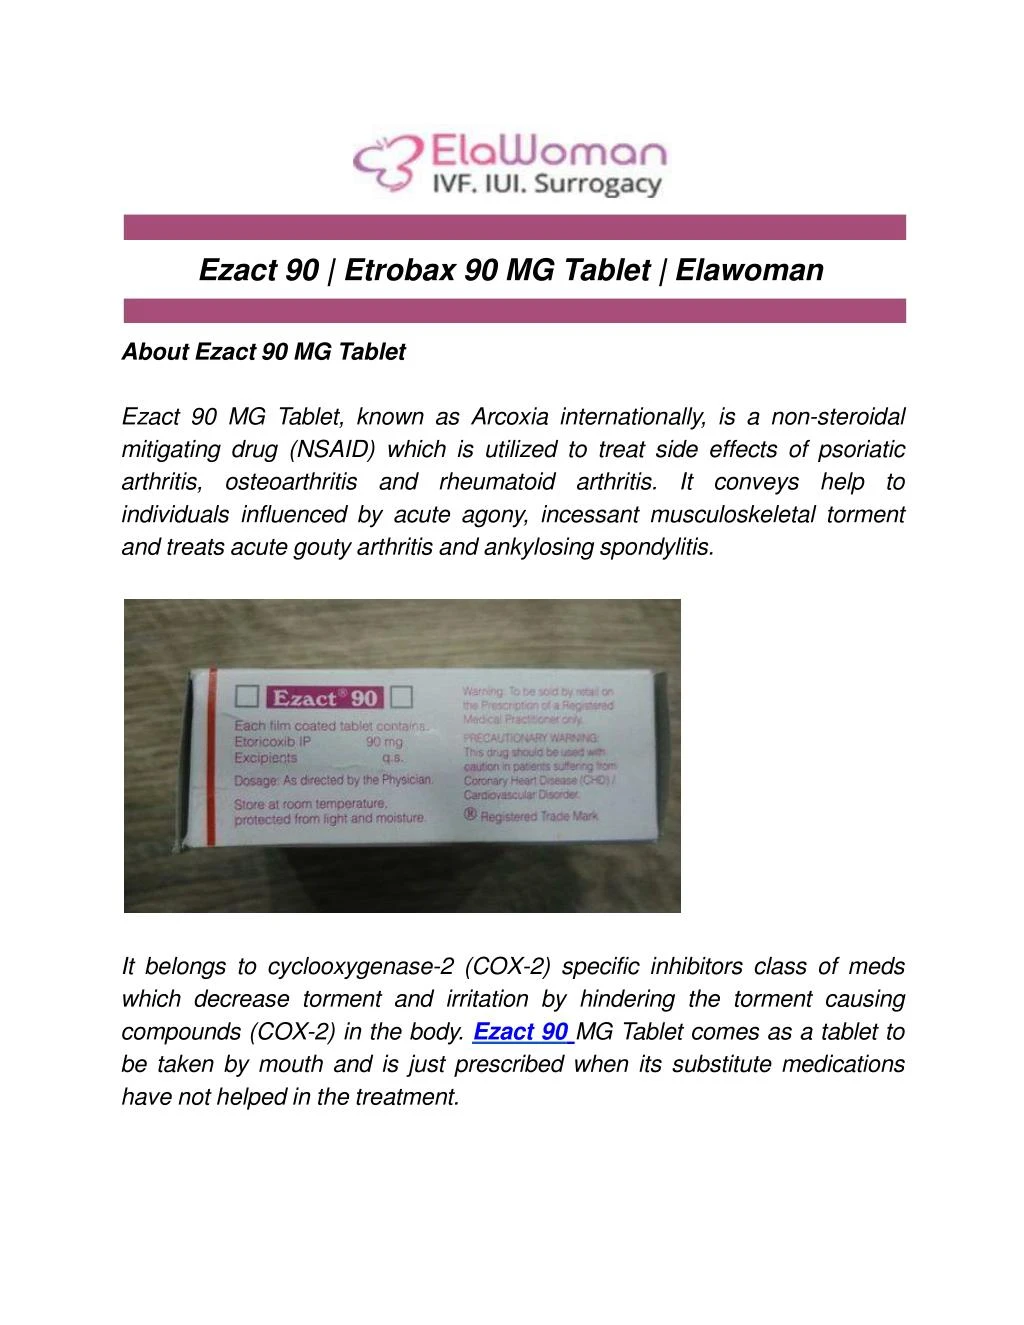 ezact 90 etrobax 90 mg tablet elawoman about